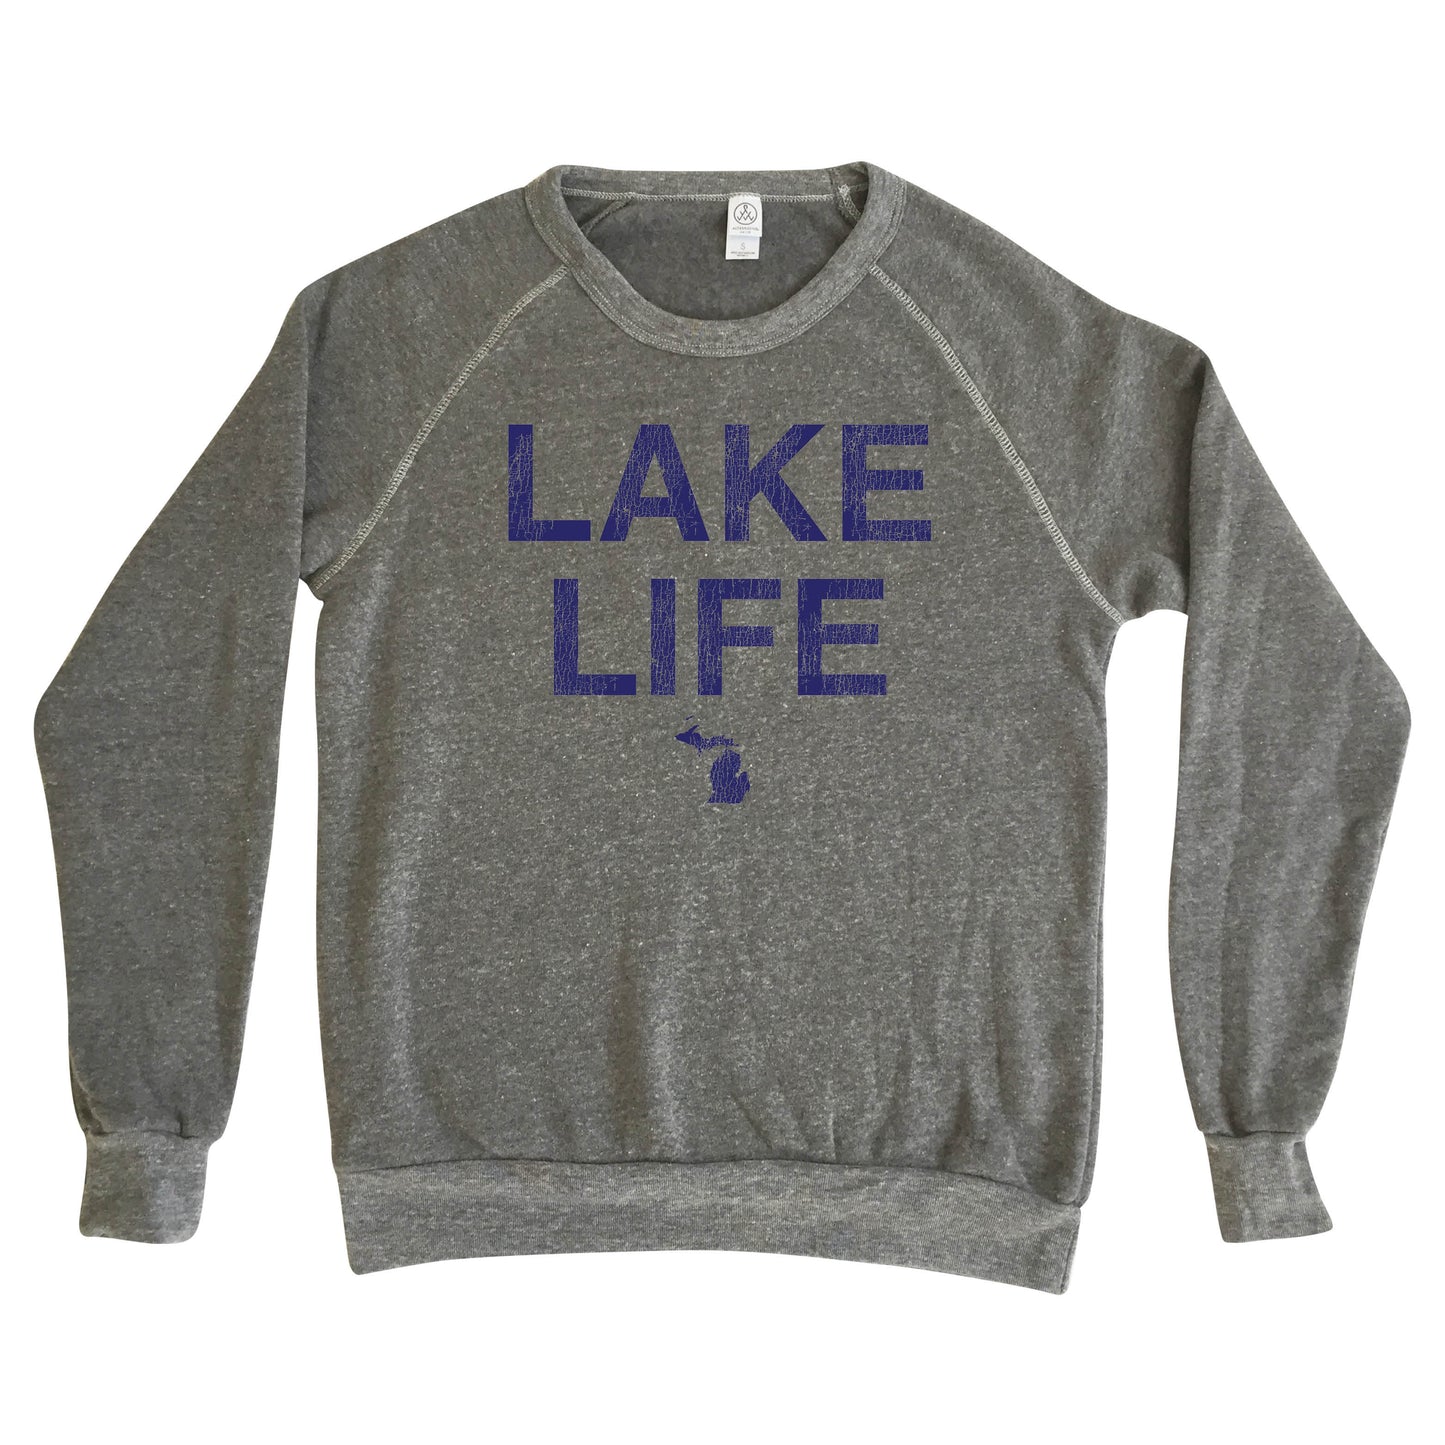 Michigan Lake Life - Fleece Sweatshirt